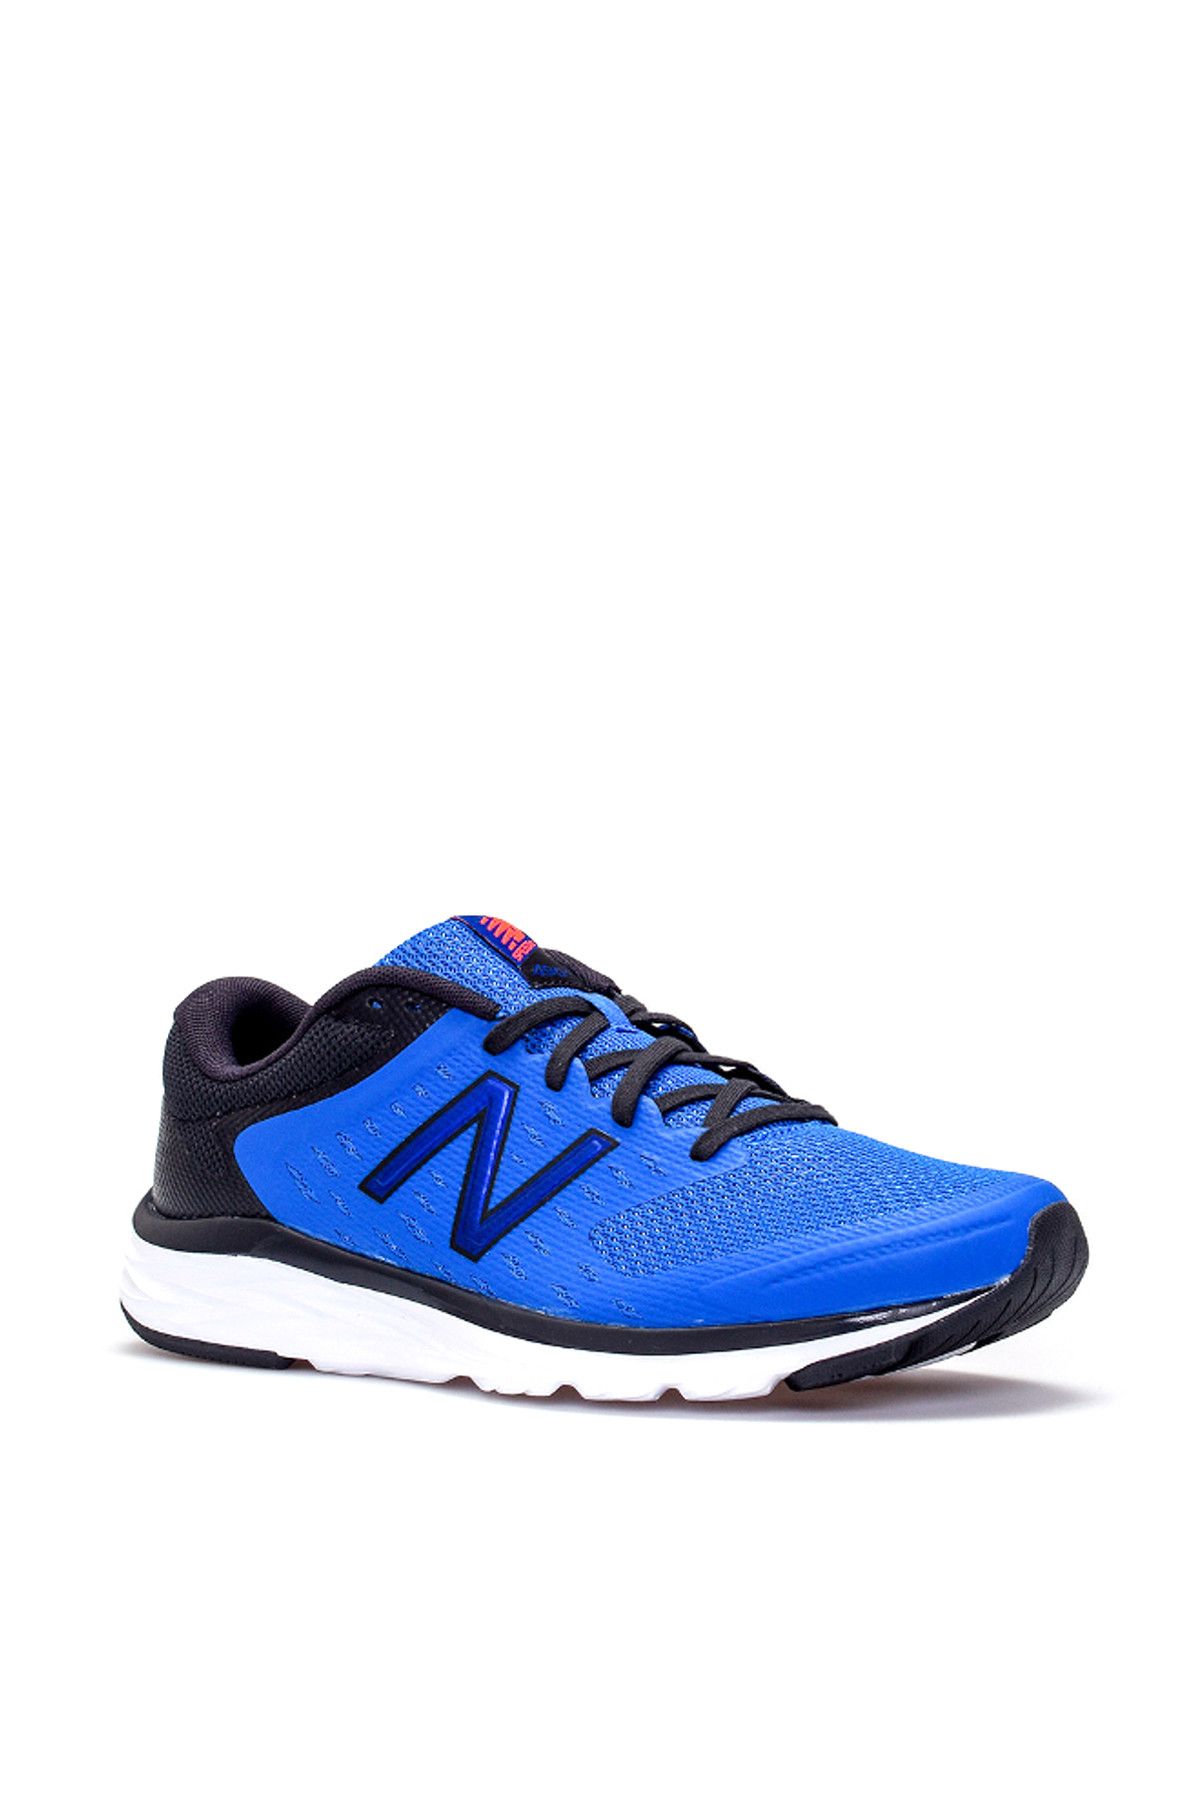 New Balance 490 Erkek Mavi Koşu Ayakkabısı - M490LC5